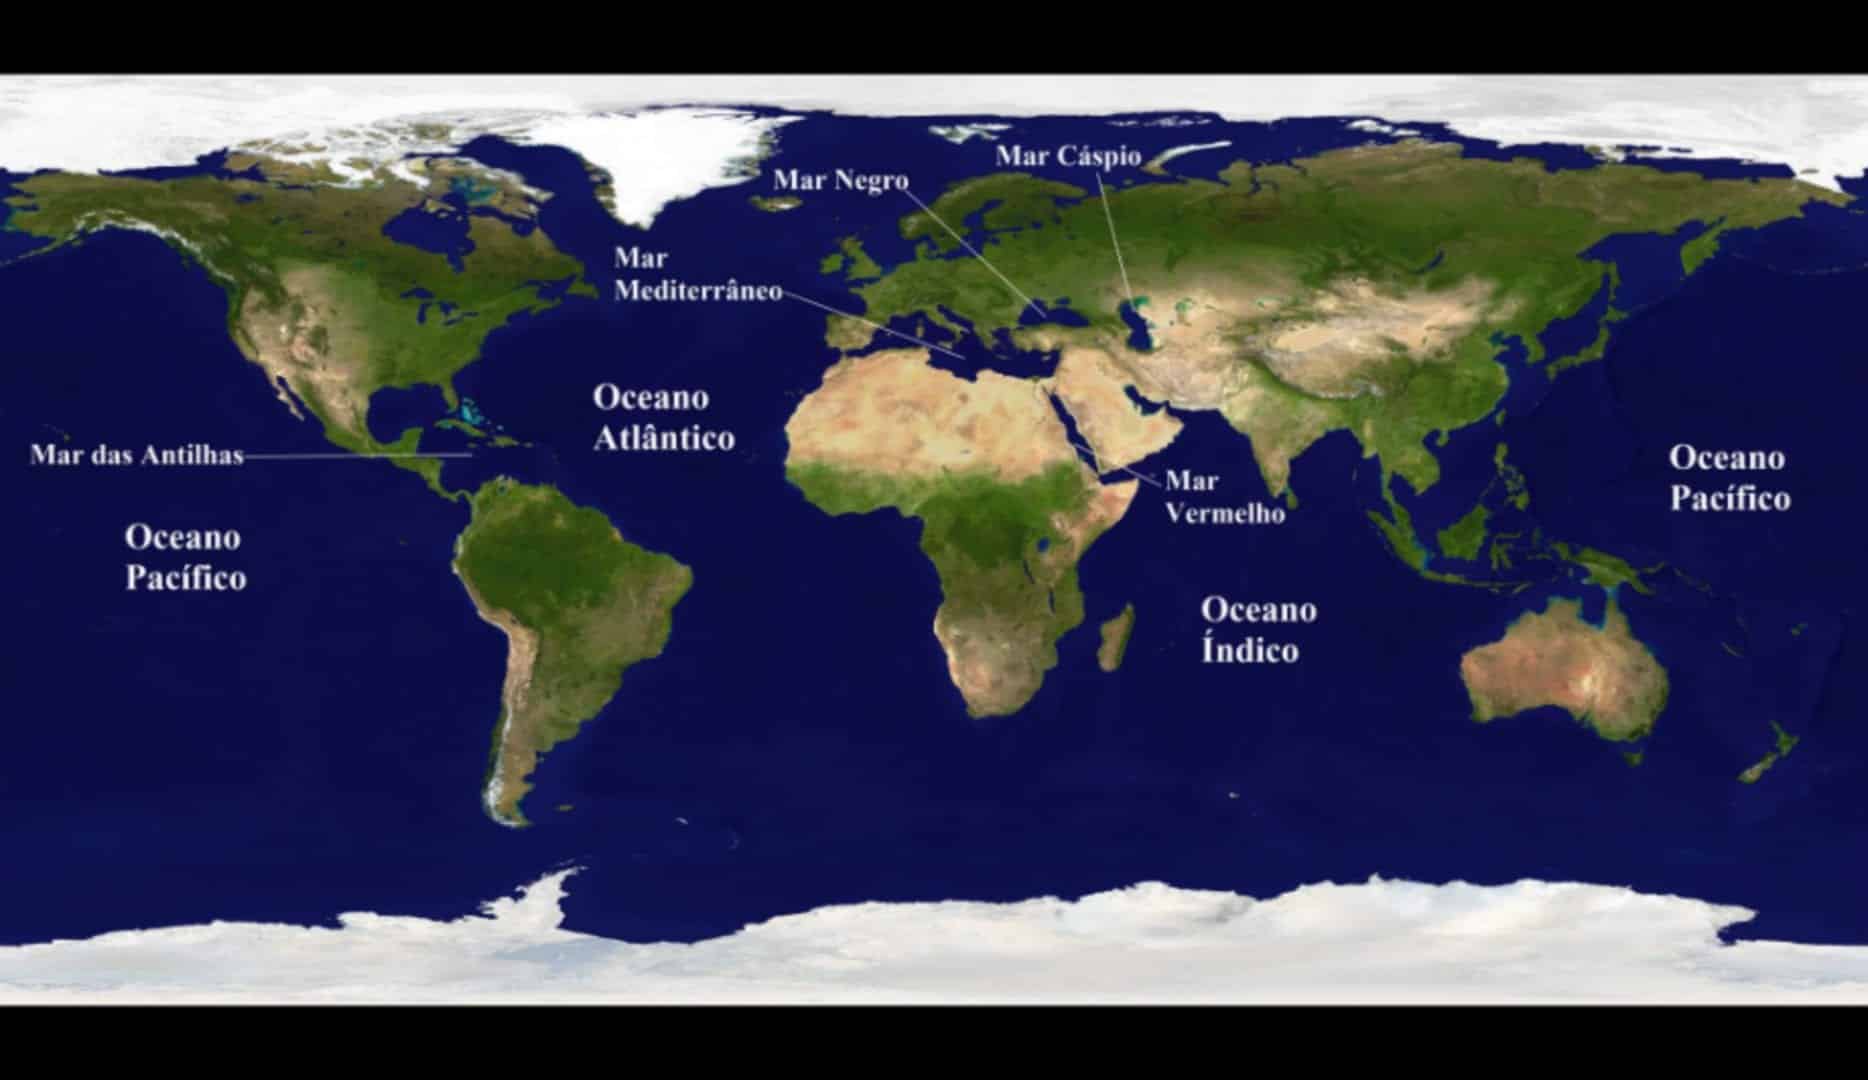 Descubra agora quais são os famosos sete mares do mundo